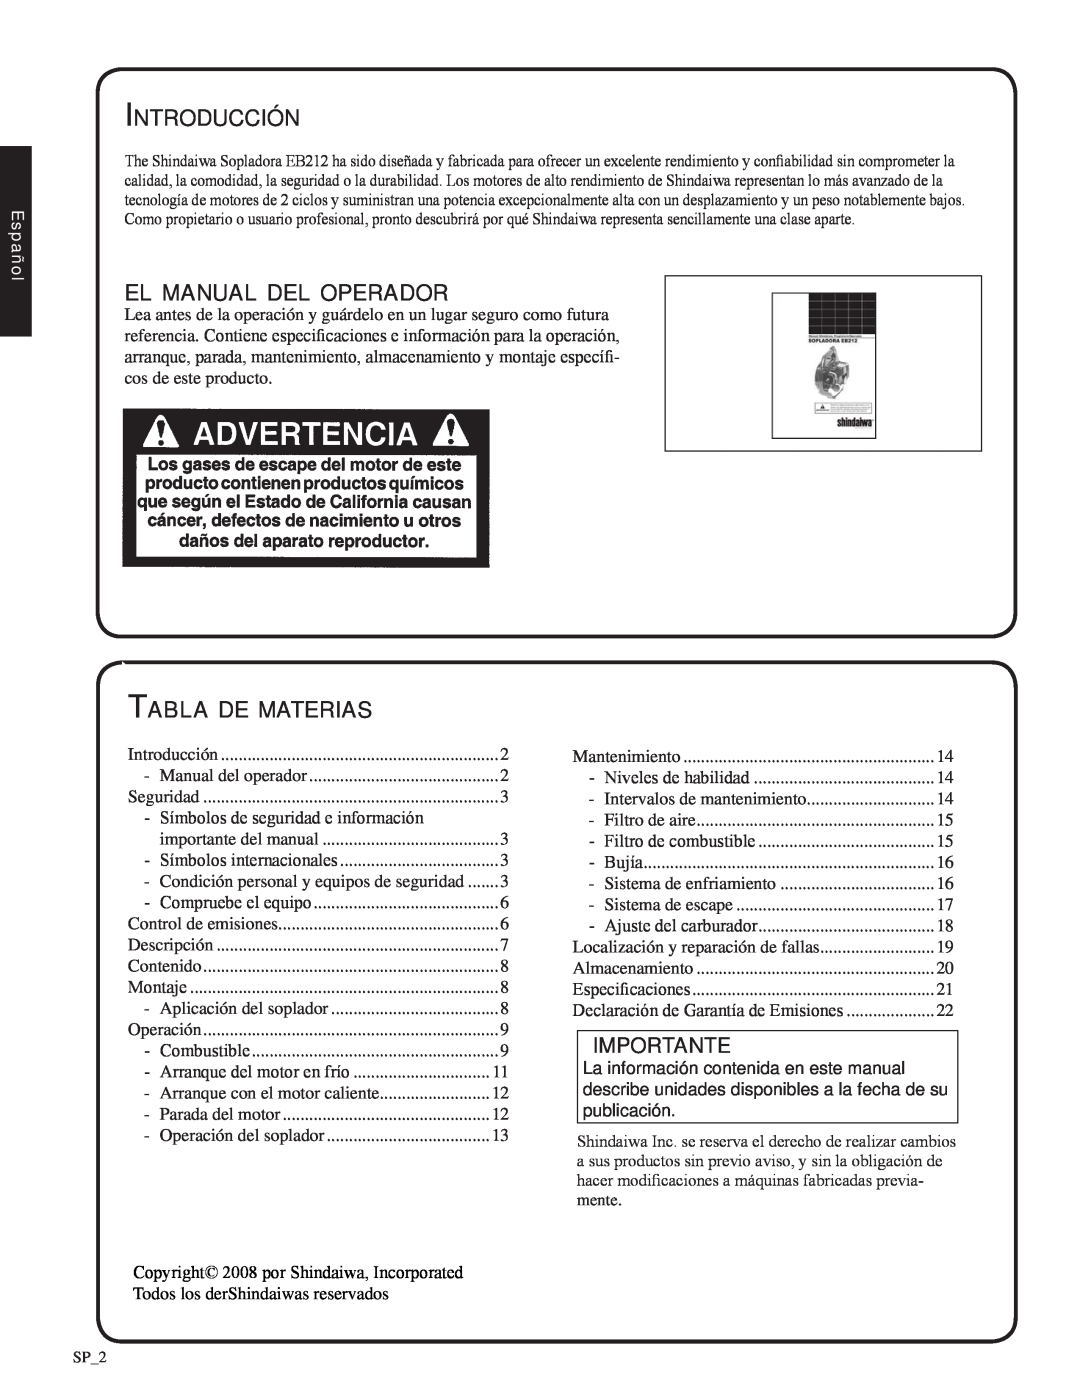 Shindaiwa EB212, 82051 Introducción, el manual del operador, Tabla de materias, Importante, Español 